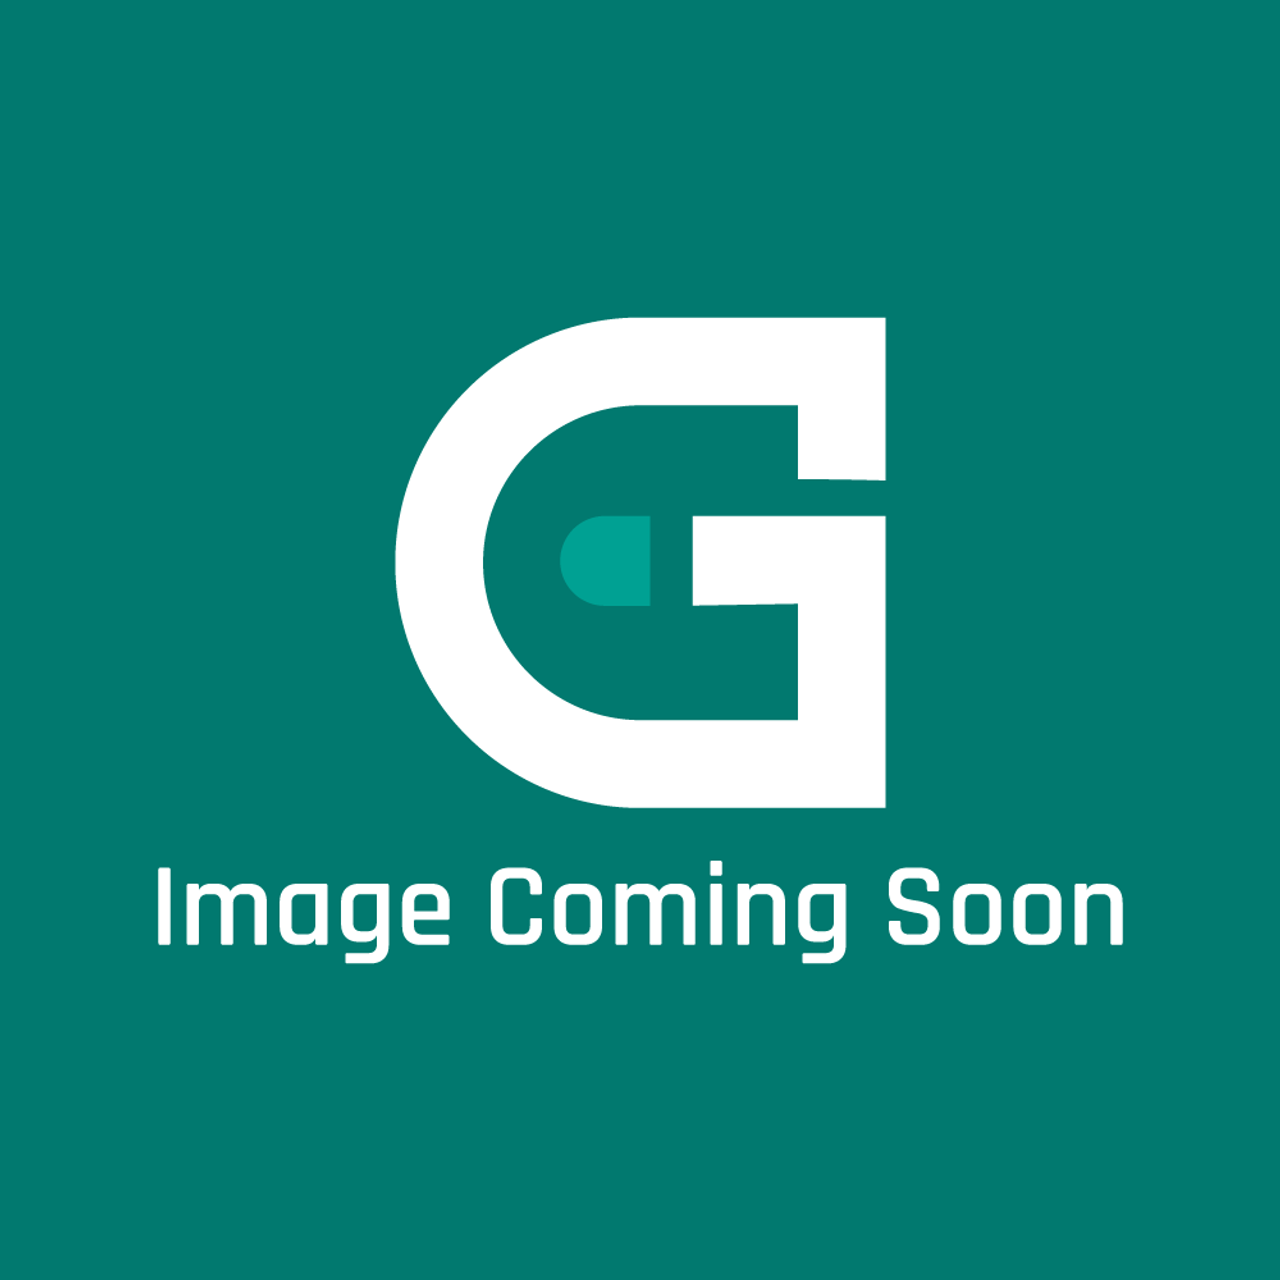 Groen 155750-01 - Kit, Bp-30G, Ng To Lp, 0 -2000' El - Image Coming Soon!